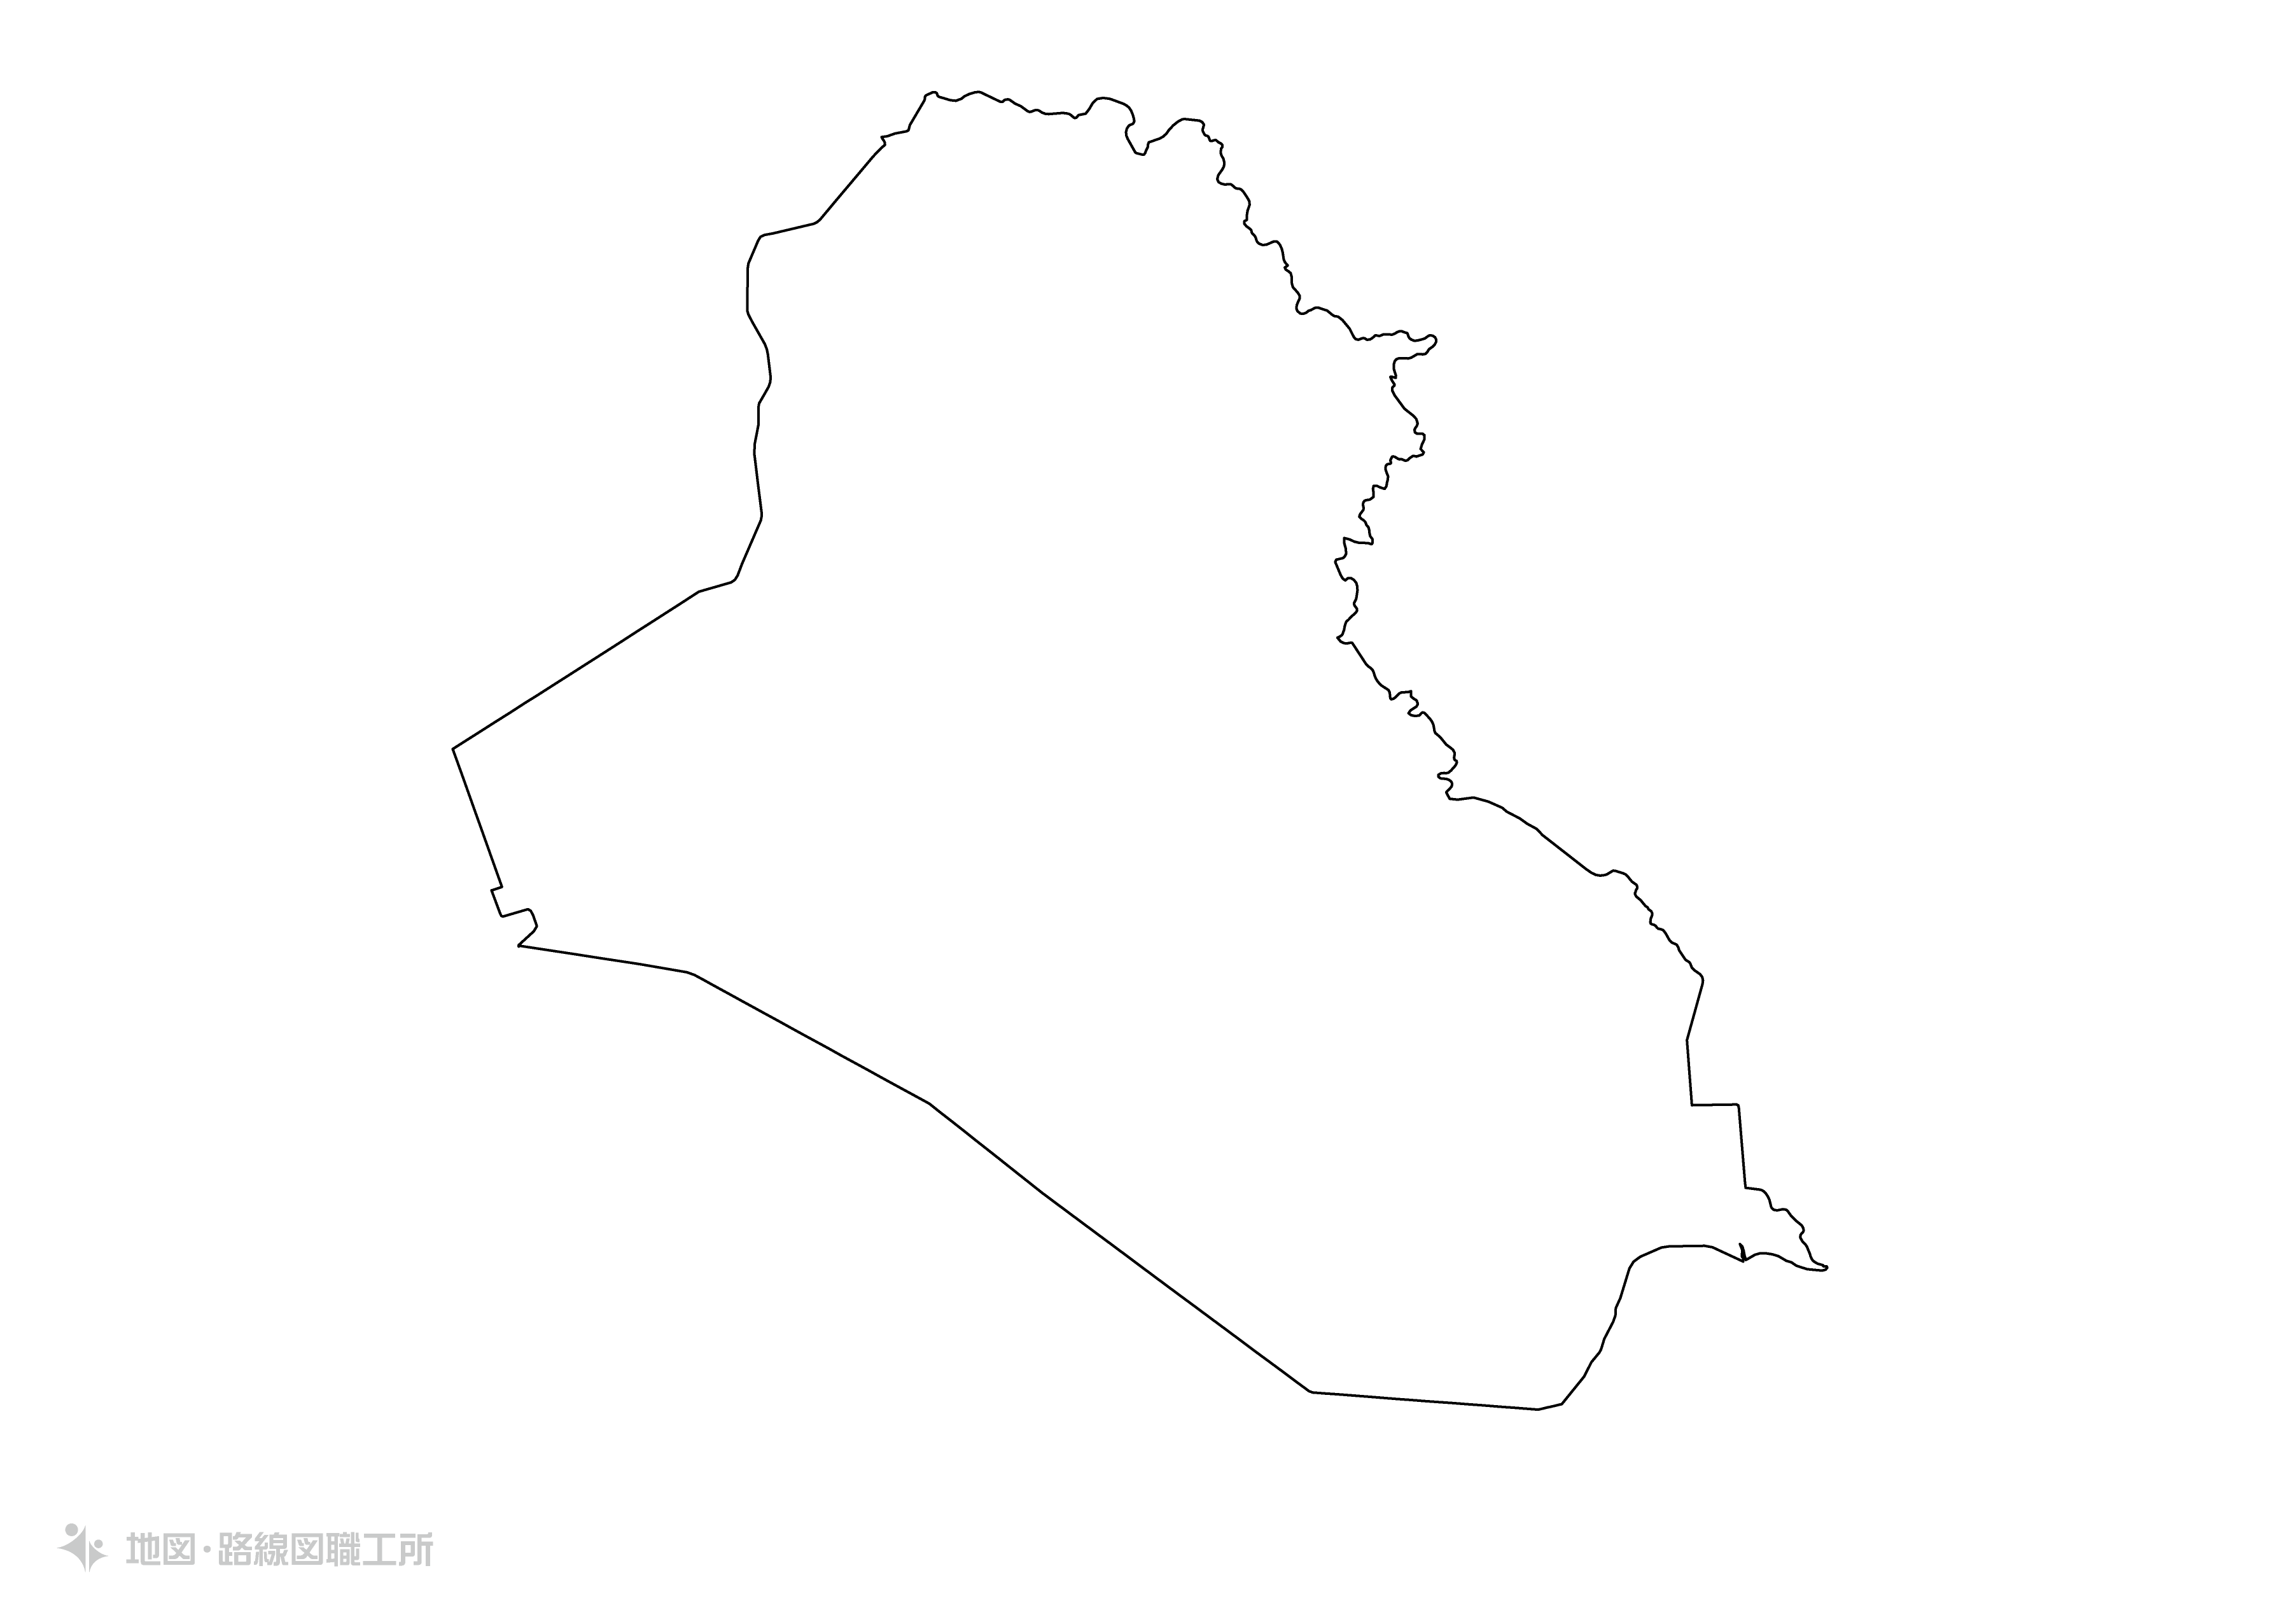 世界の白地図 イラク共和国 republic-of-iraq map